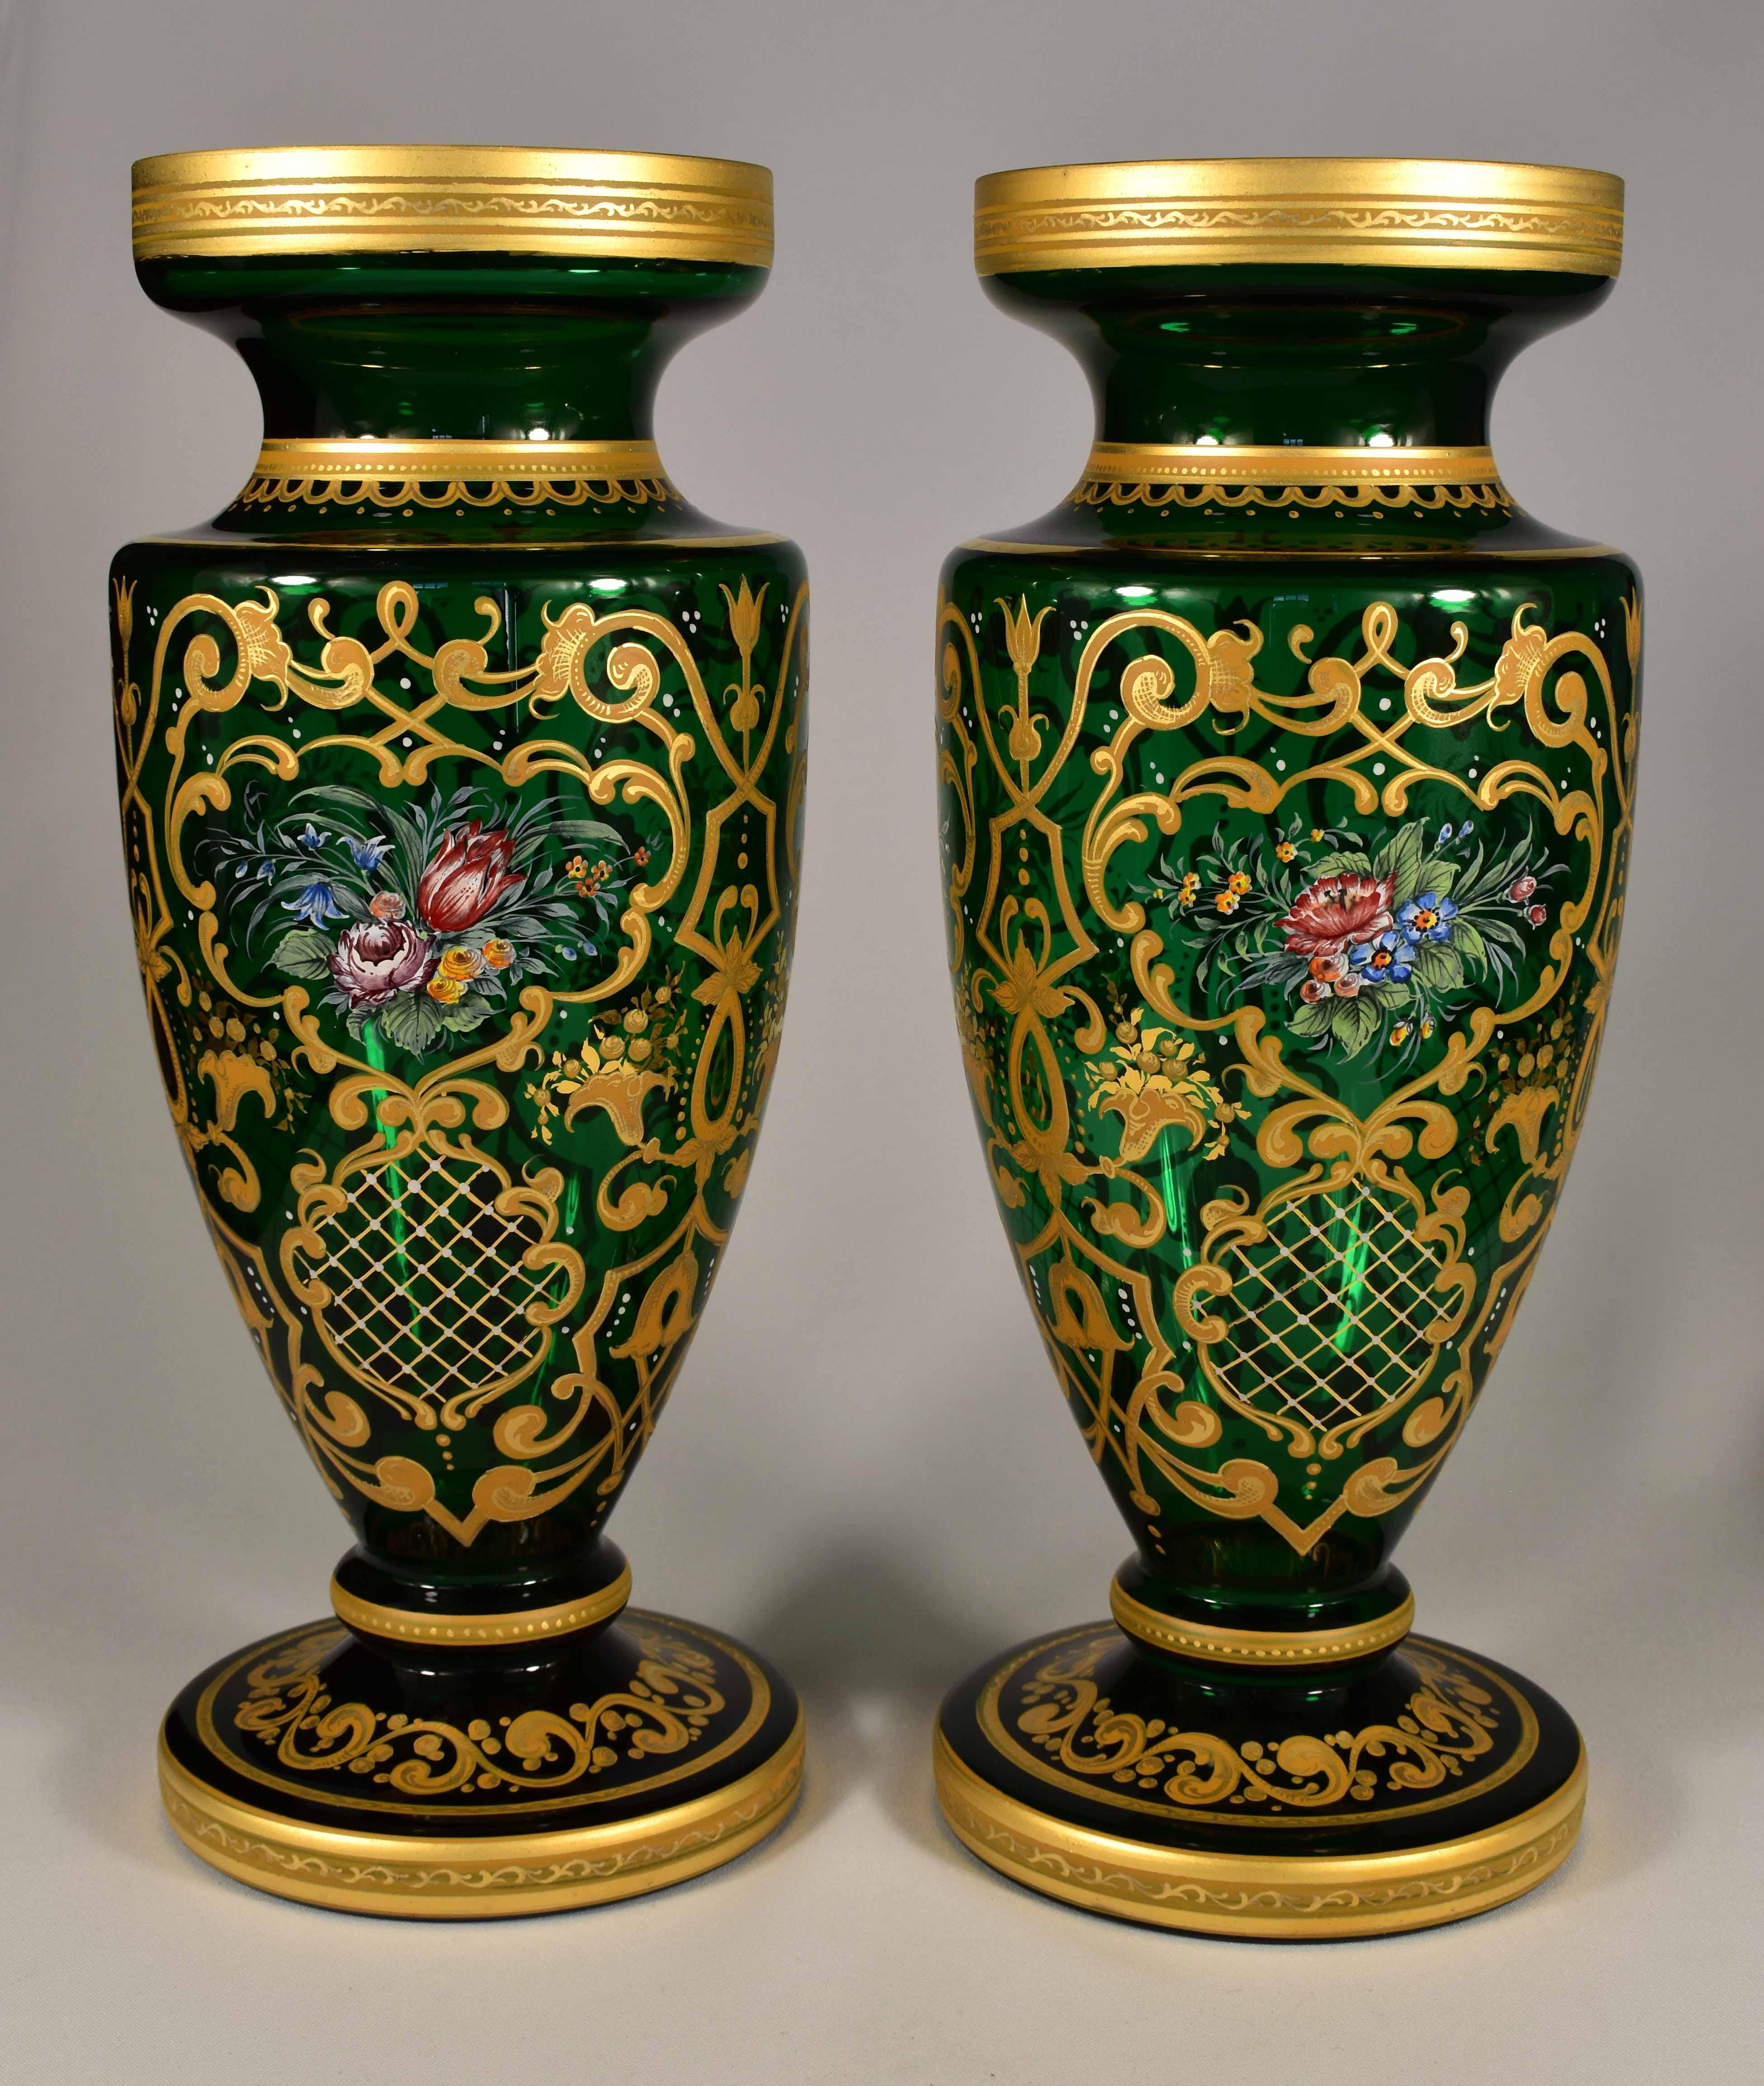 Une belle paire de vases soufflés et peints à la main, C'est l'art des verriers tchèques du 20ème siècle dans le style du 19ème siècle, Peinture ornementale en couleurs ocre, complétée par un motif floral, tout est doré. Une belle addition aux